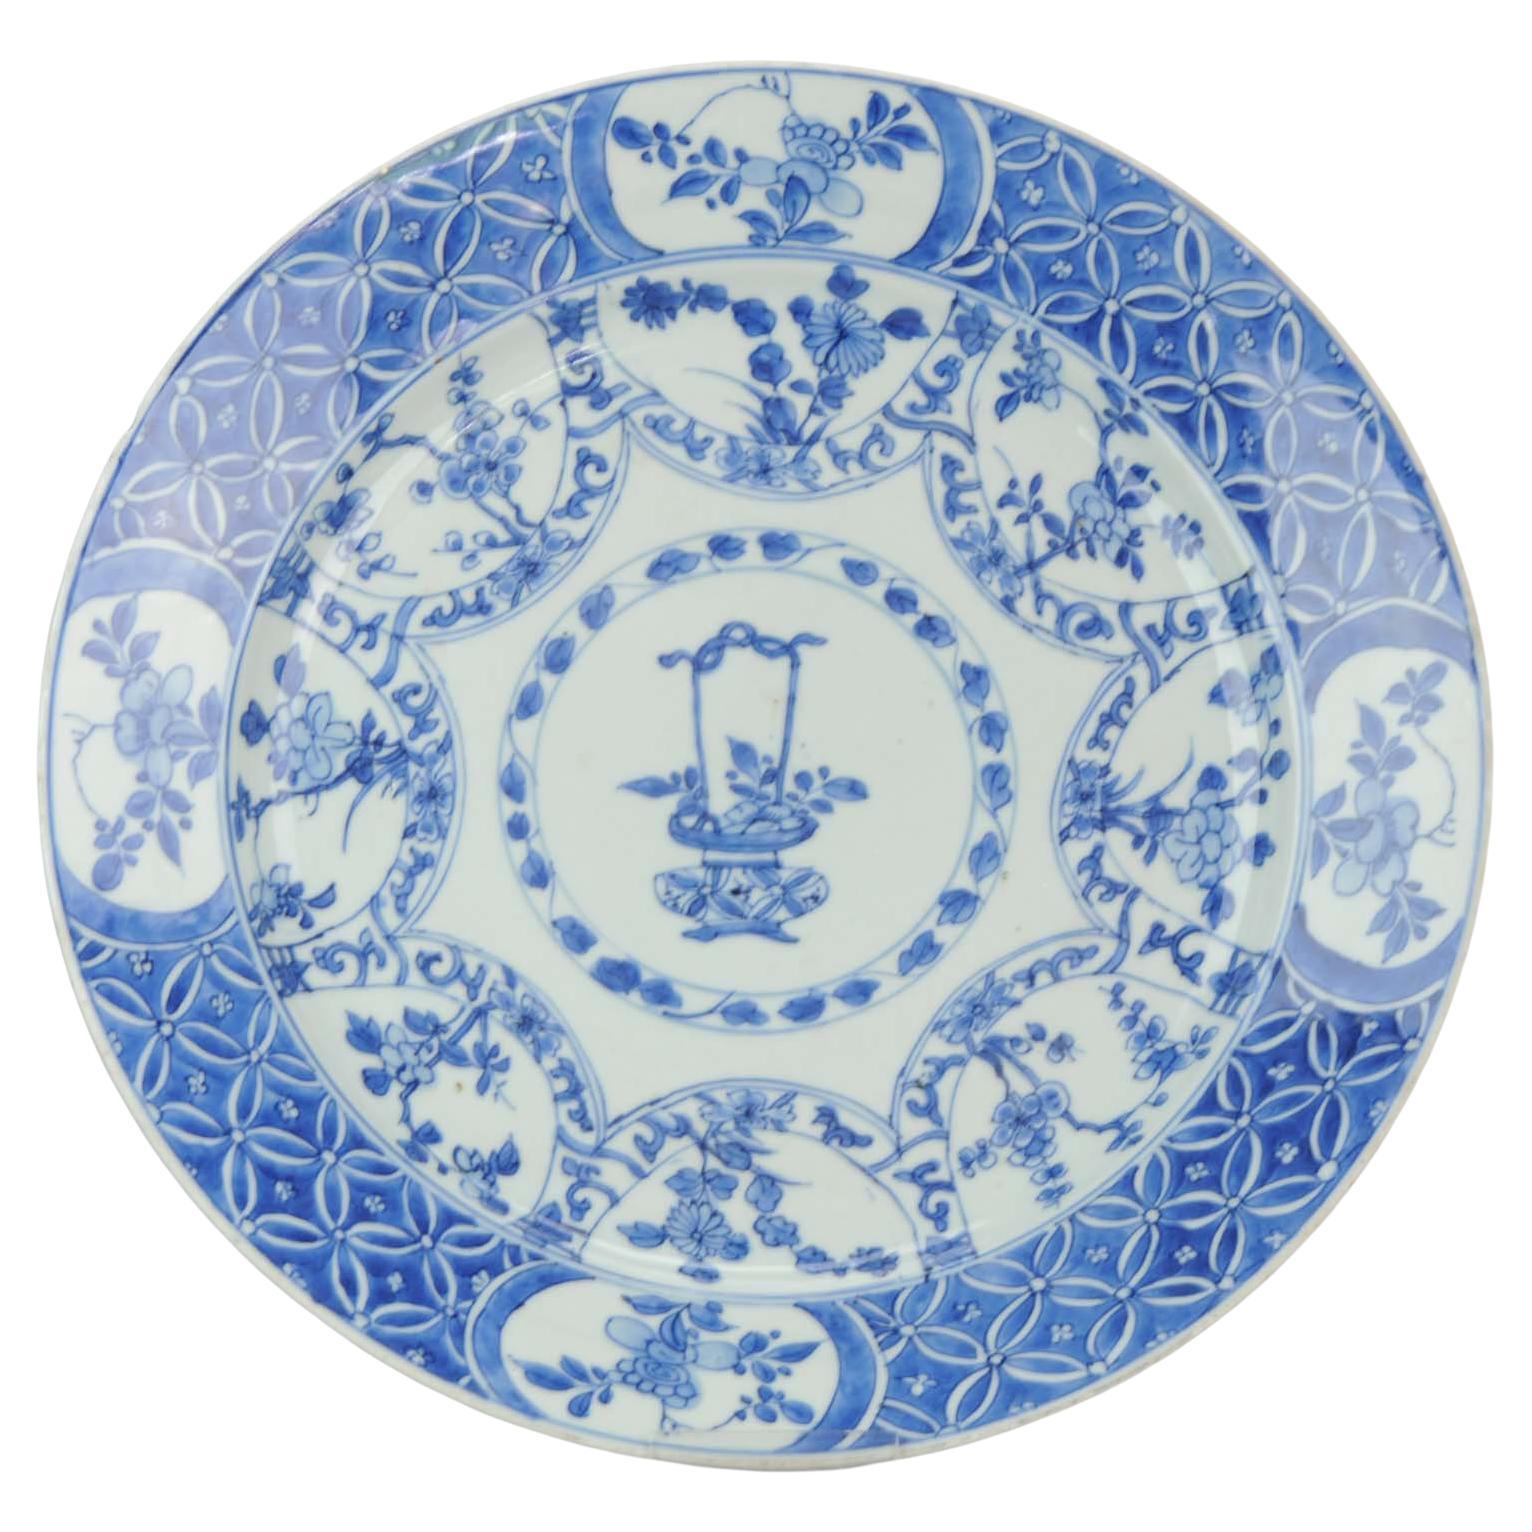 Assiette de présentation ancienne en porcelaine chinoise Kangxi bleue et blanche, vers 1700